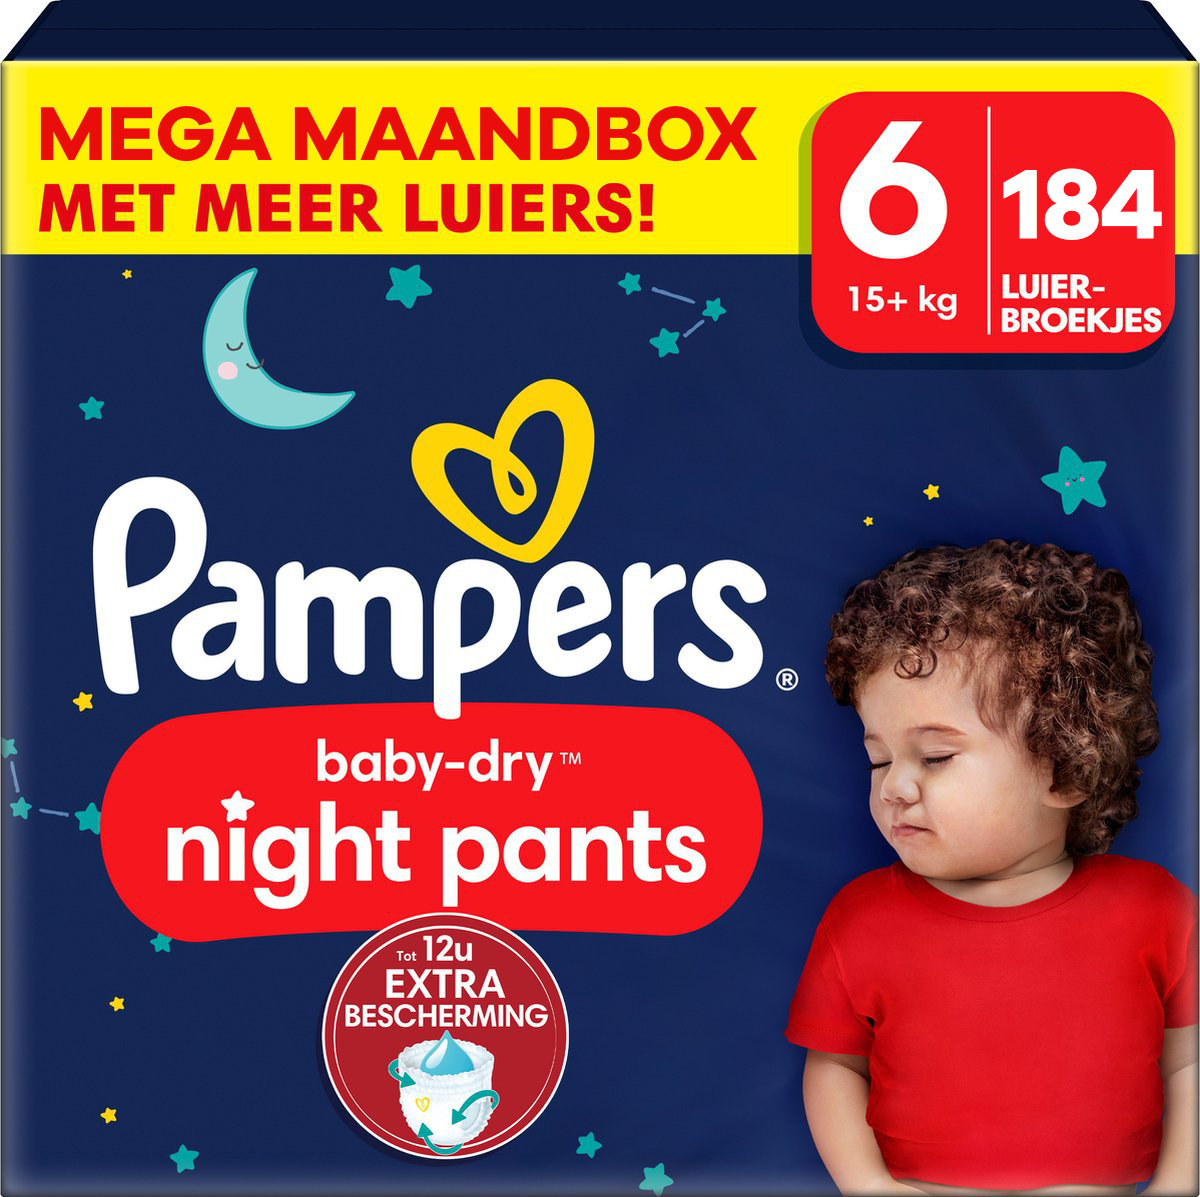 Pampers  Baby Dry Night Pants - Maat 6 - Mega Maandbox - 184 luierbroekjes